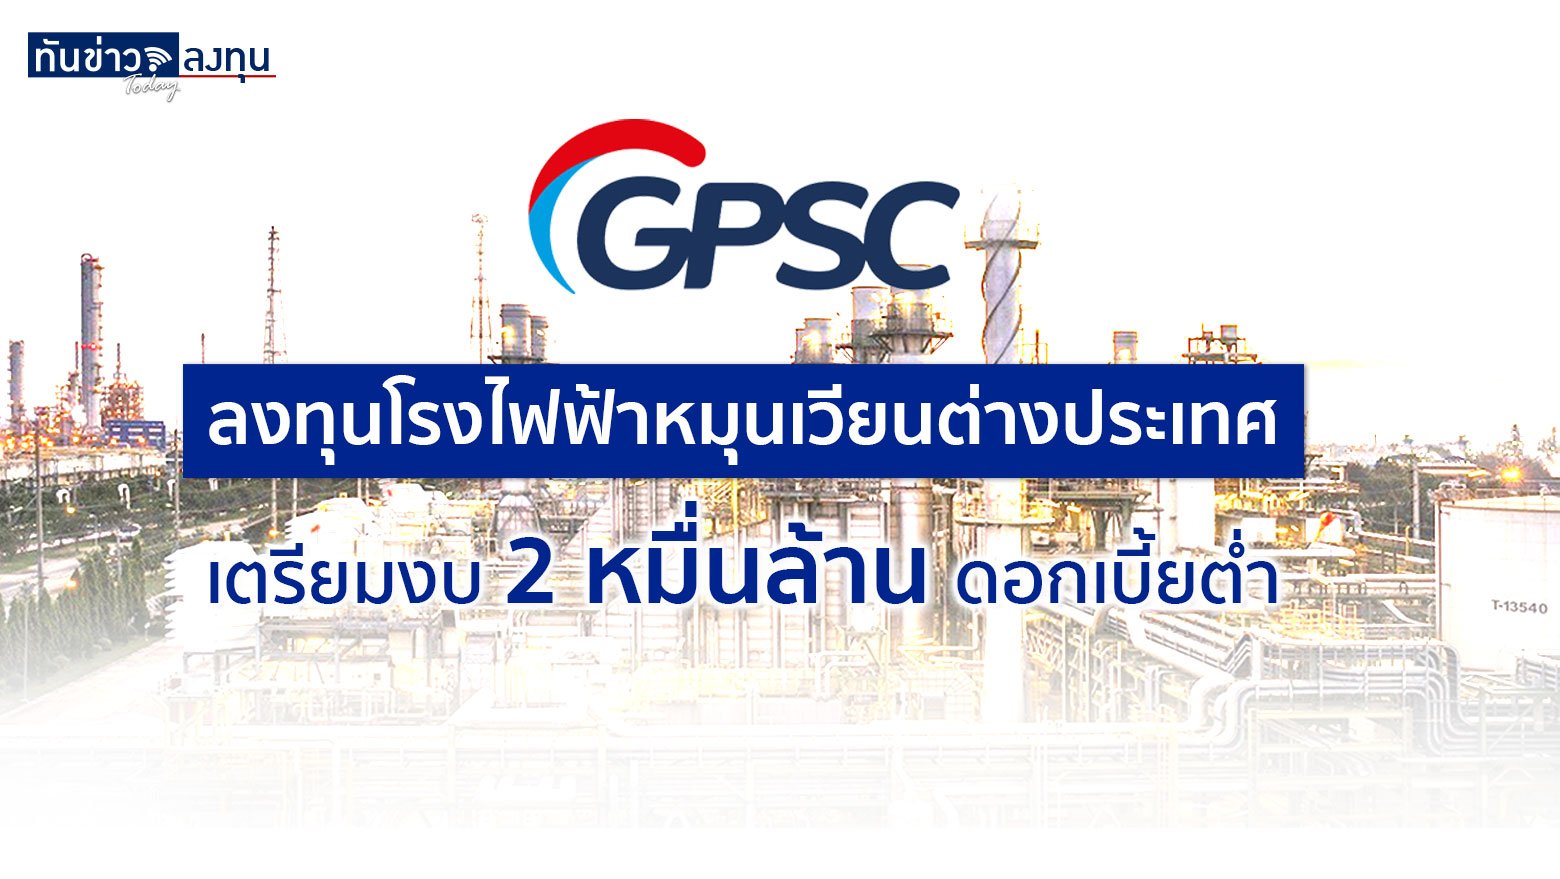 GPSC ลงทุนโรงไฟฟ้าหมุนเวียนต่างประเทศ เตรียมงบ 2 หมื่นล้าน ดอกเบี้ยต่ำ